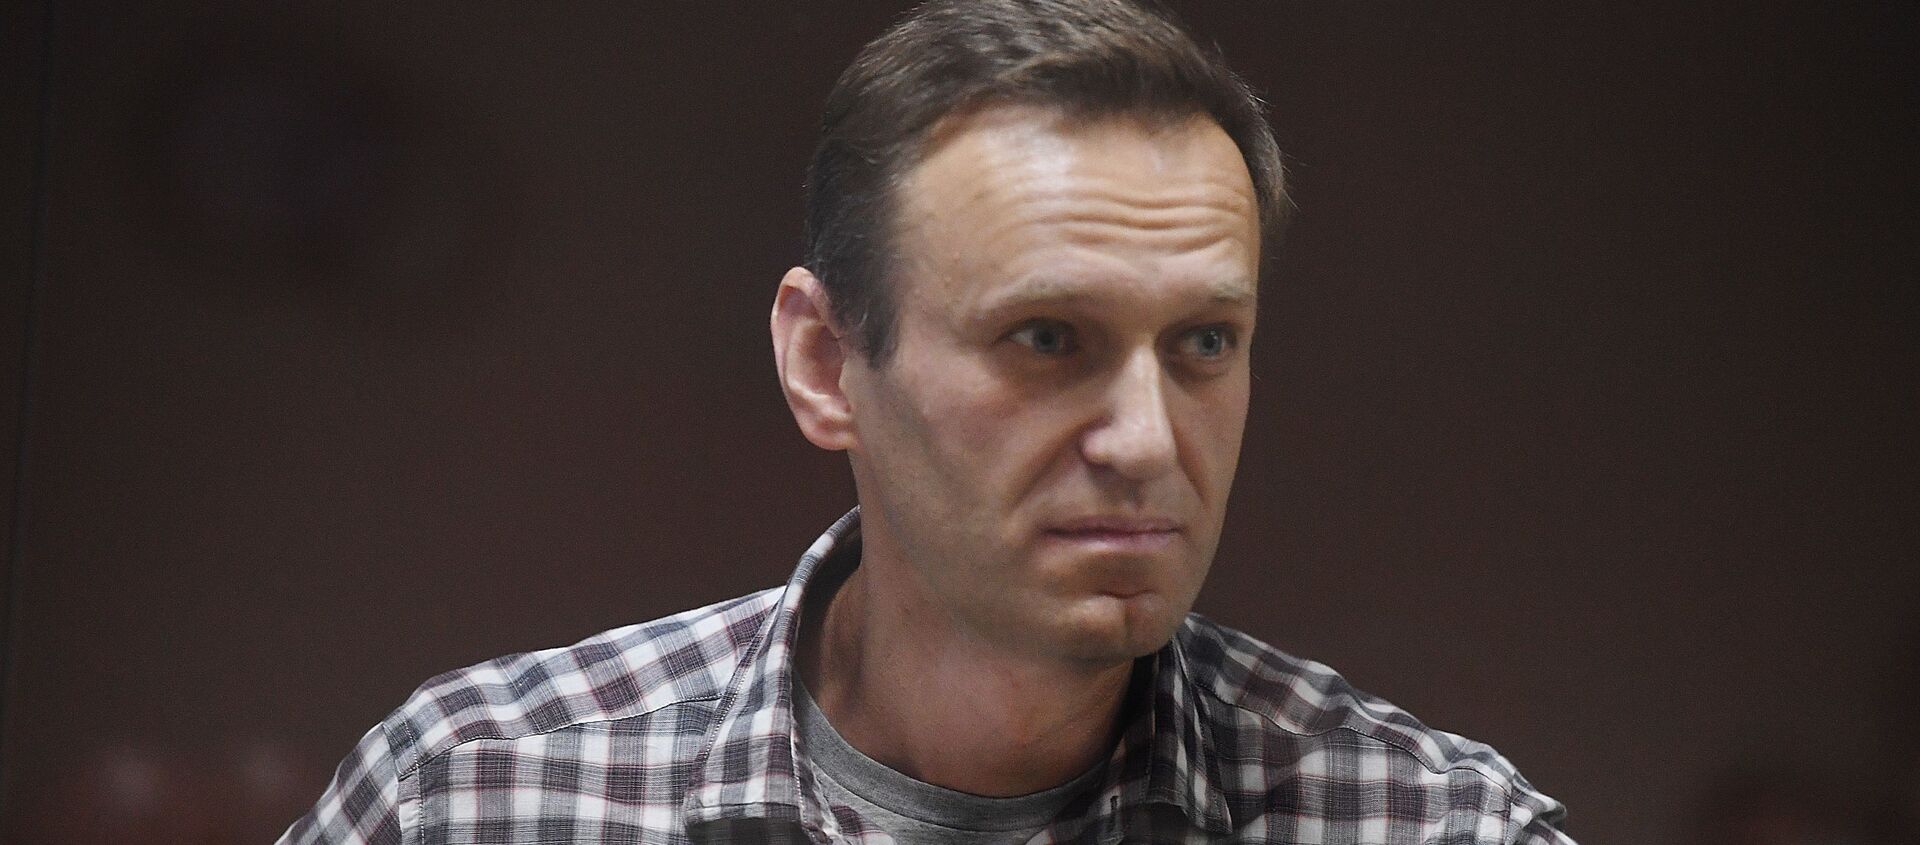 Алексей Навальный в зале суда - Sputnik Латвия, 1920, 27.02.2021